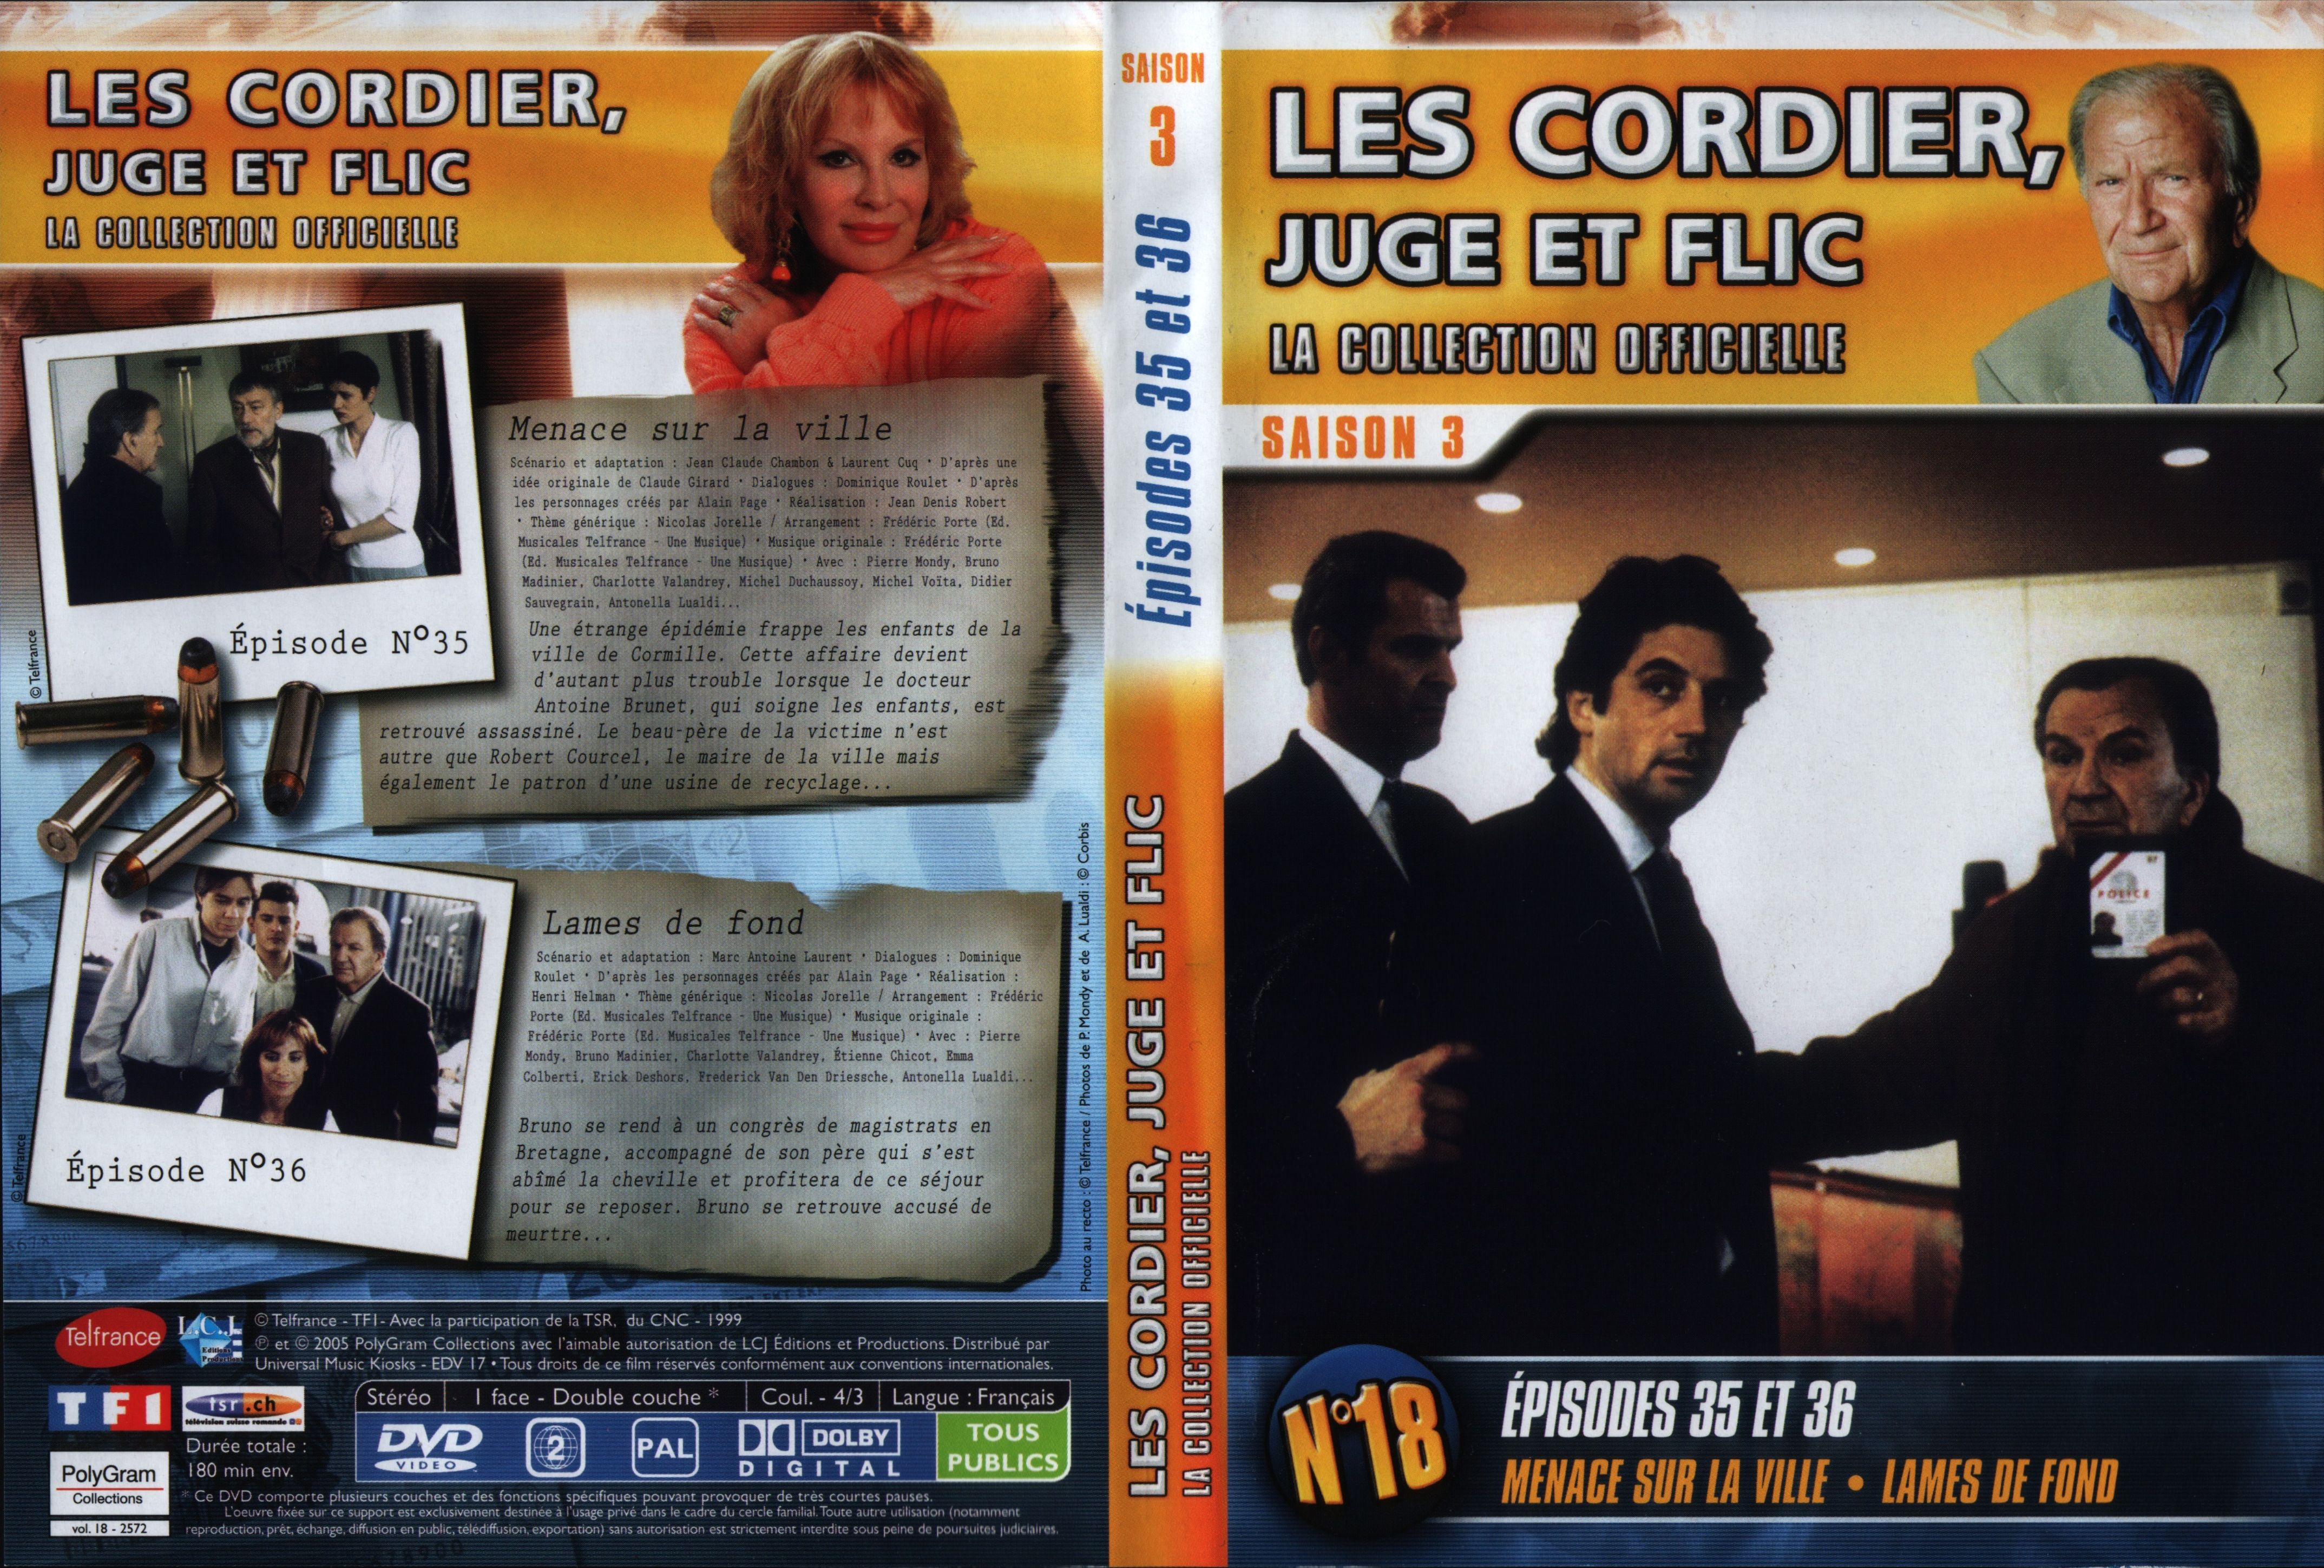 Jaquette DVD Les cordier juge et flic Saison 3 vol 18